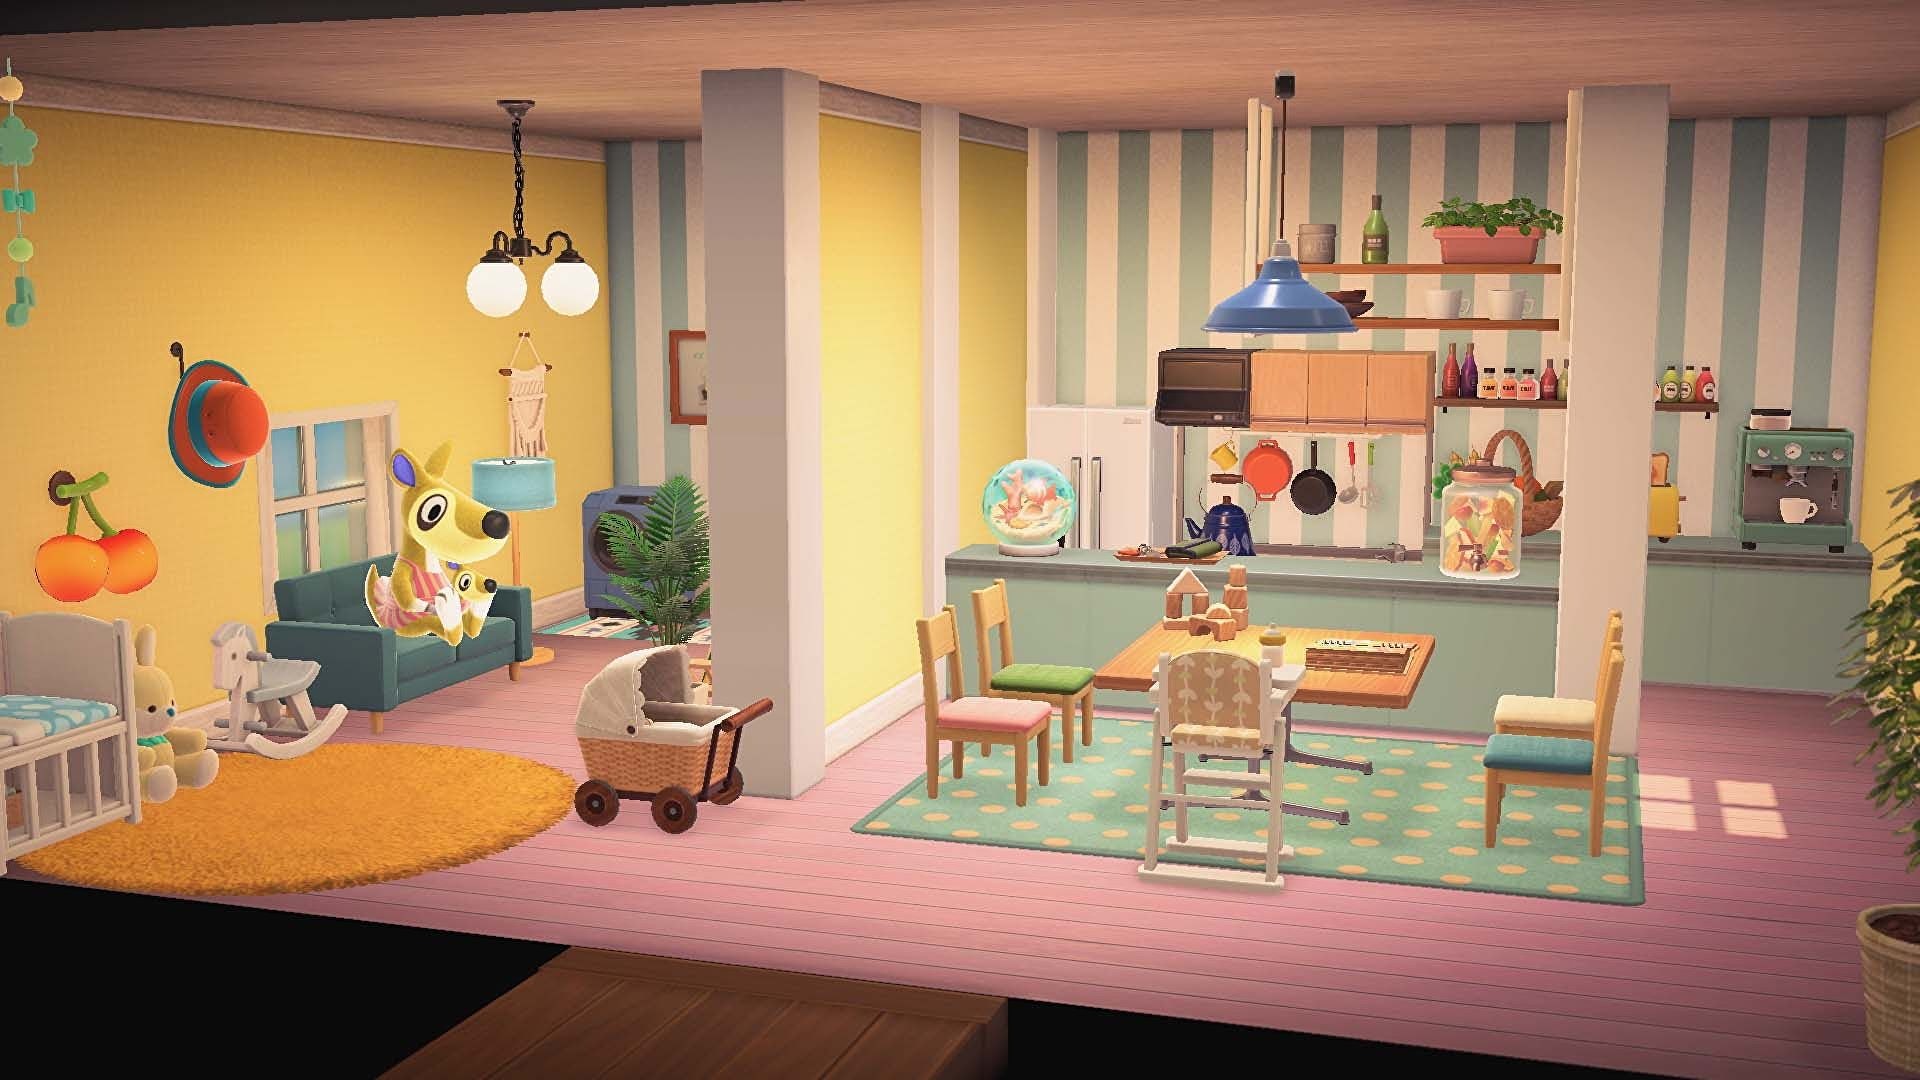 Vous pouvez maintenant concevoir la maison de vacances de vos rêves sur Animal Crossing